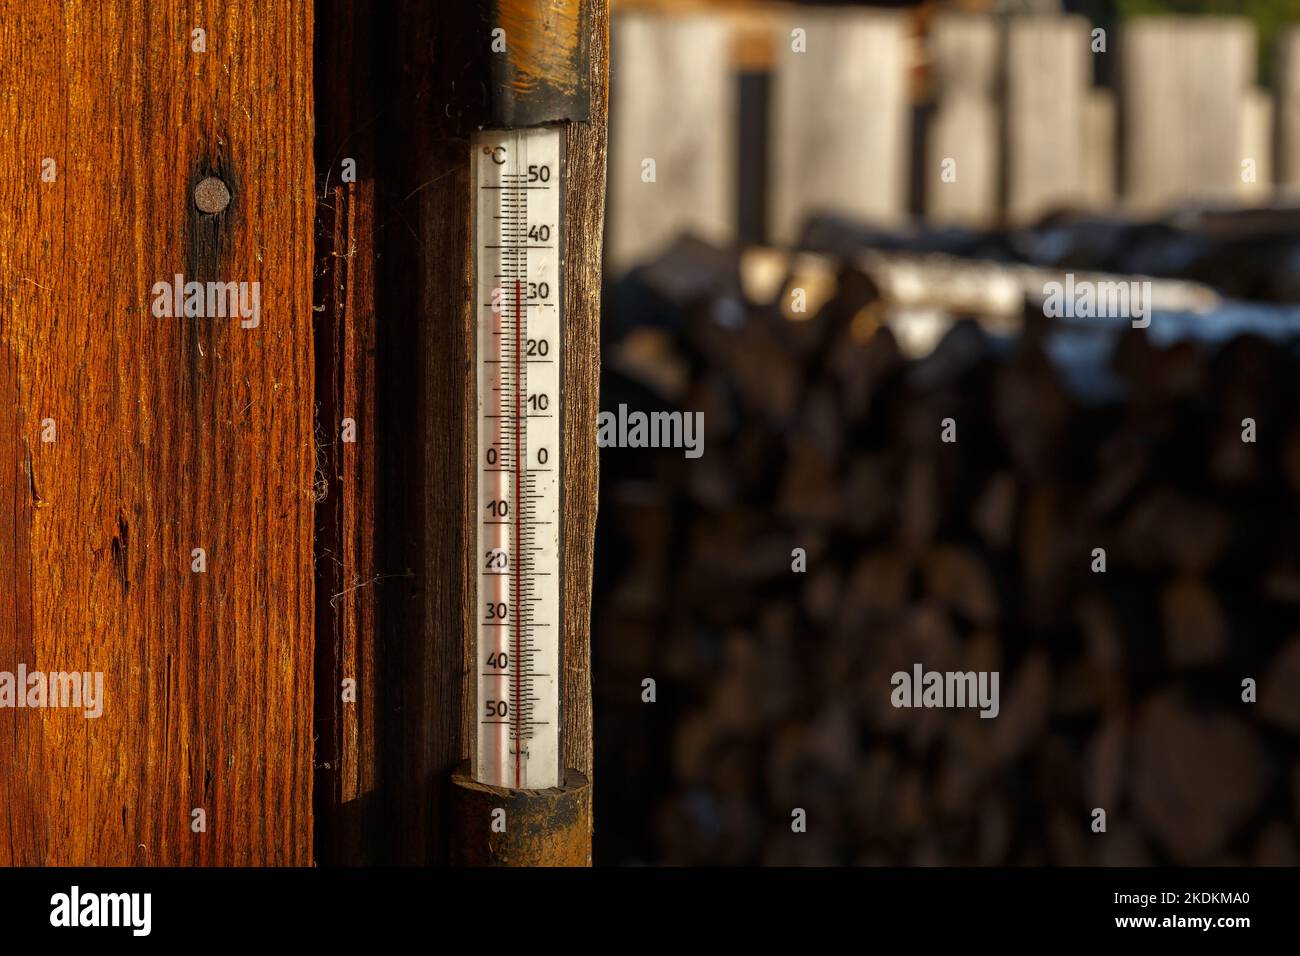 Outdoor-Thermometer an der Wand des Hauses. Thermometer, das an einer Holzwand in der Straße hängt. Sommerhitze, Celsius-Skala Stockfoto